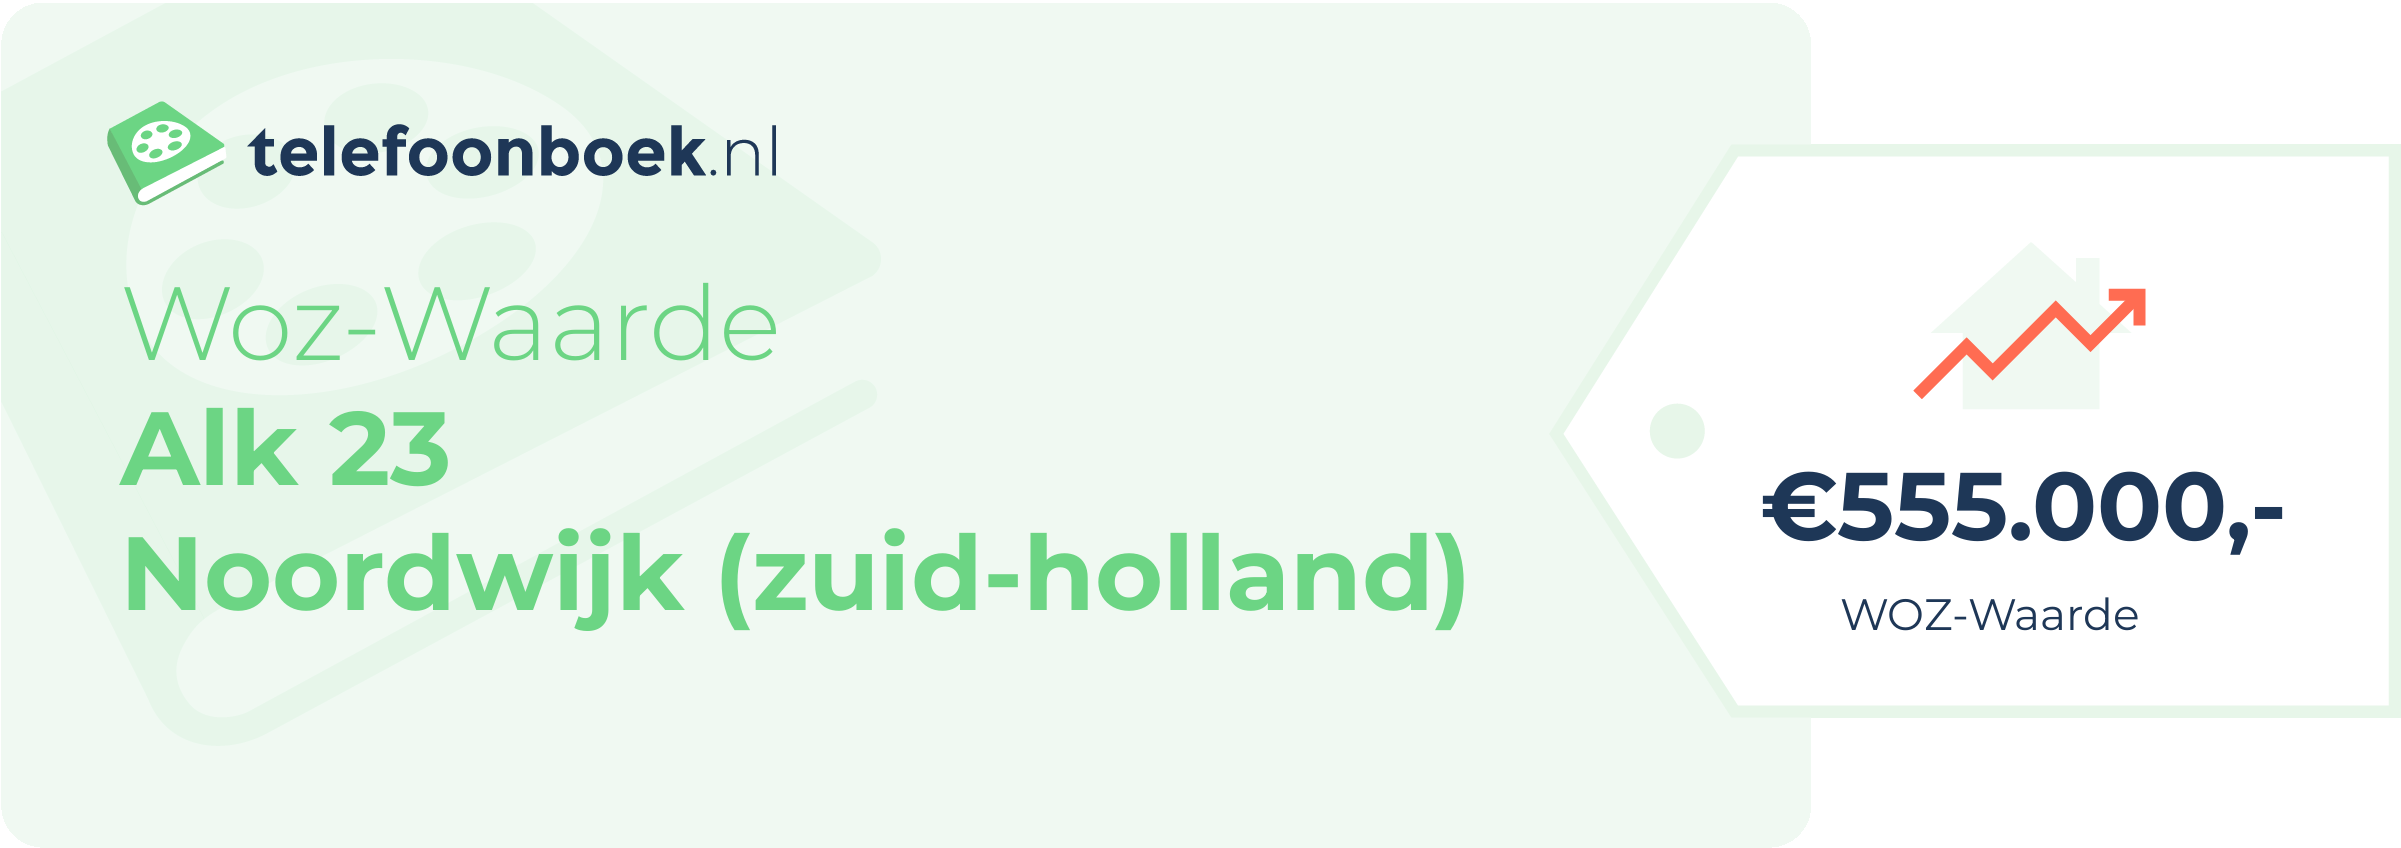 WOZ-waarde Alk 23 Noordwijk (Zuid-Holland)